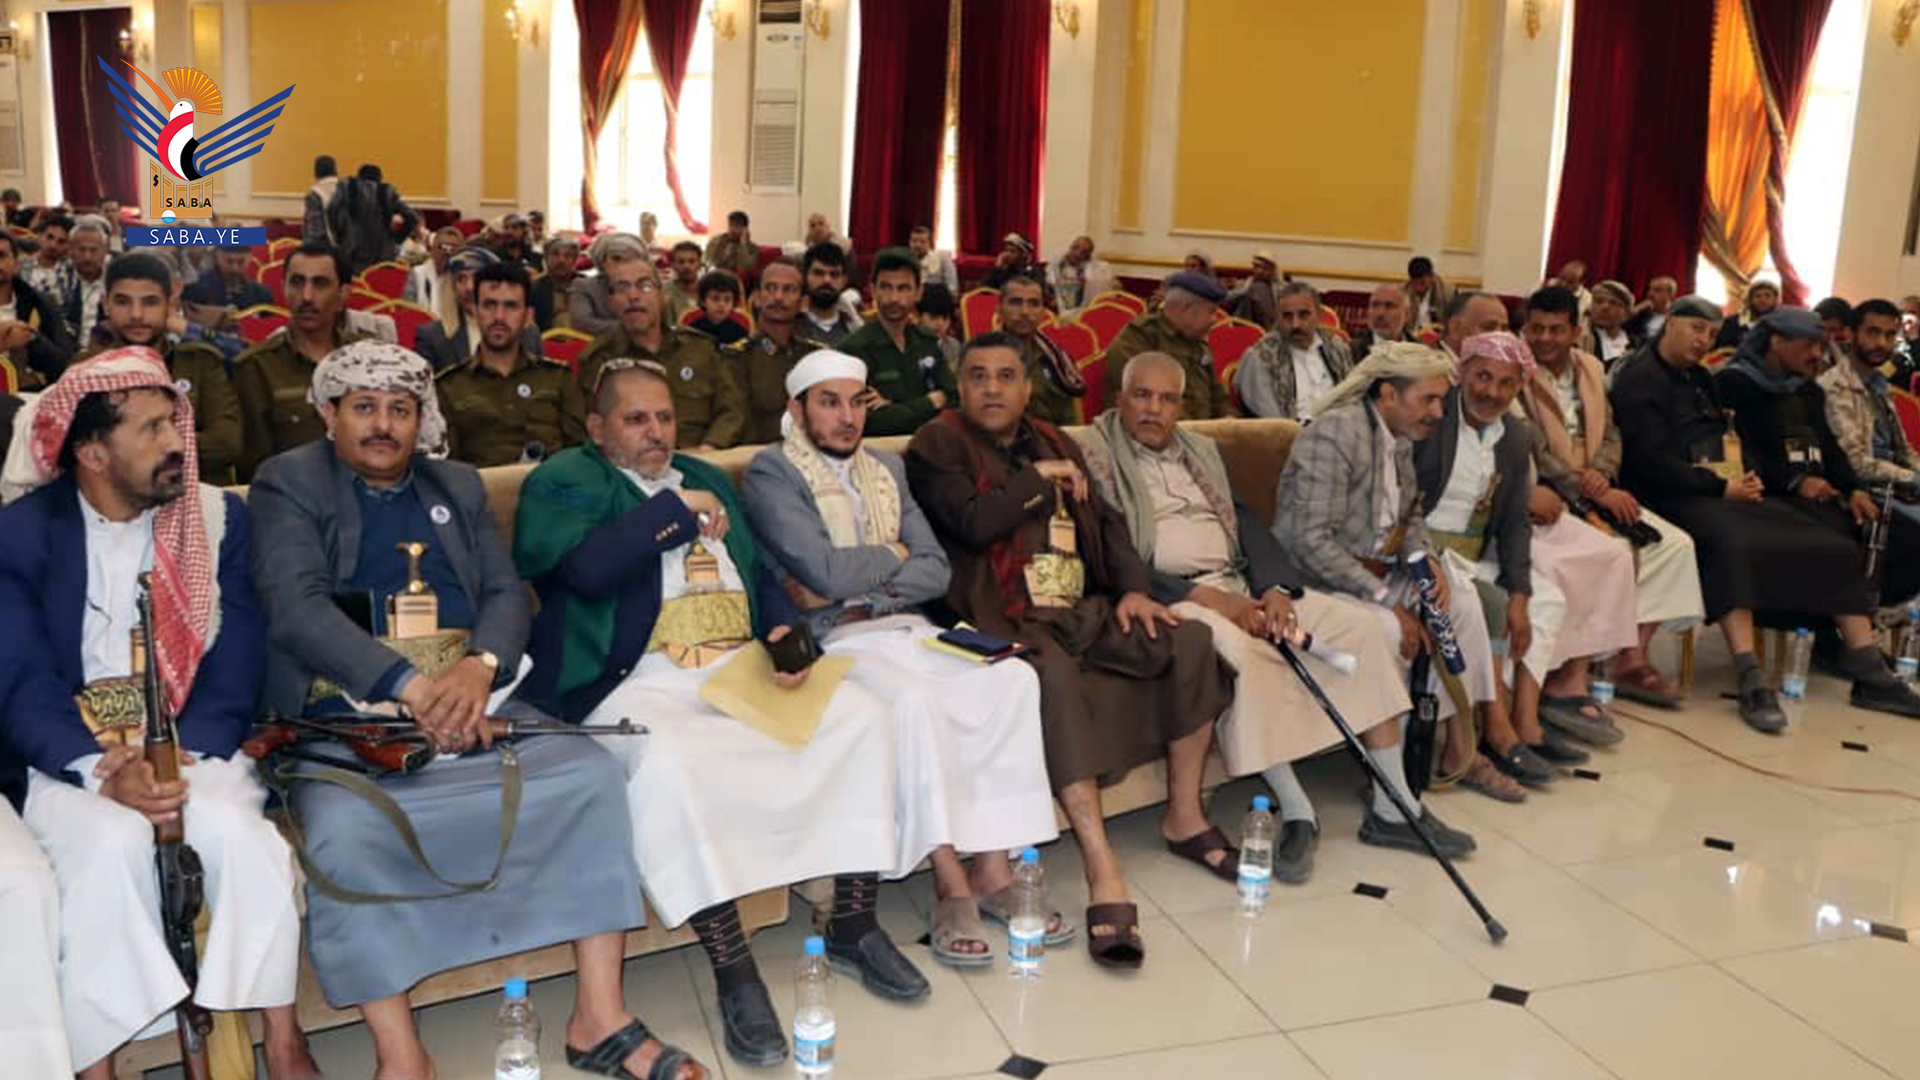 محافظة صنعاء تحيي ذكرى الرئيس الشهيد صالح الصماد